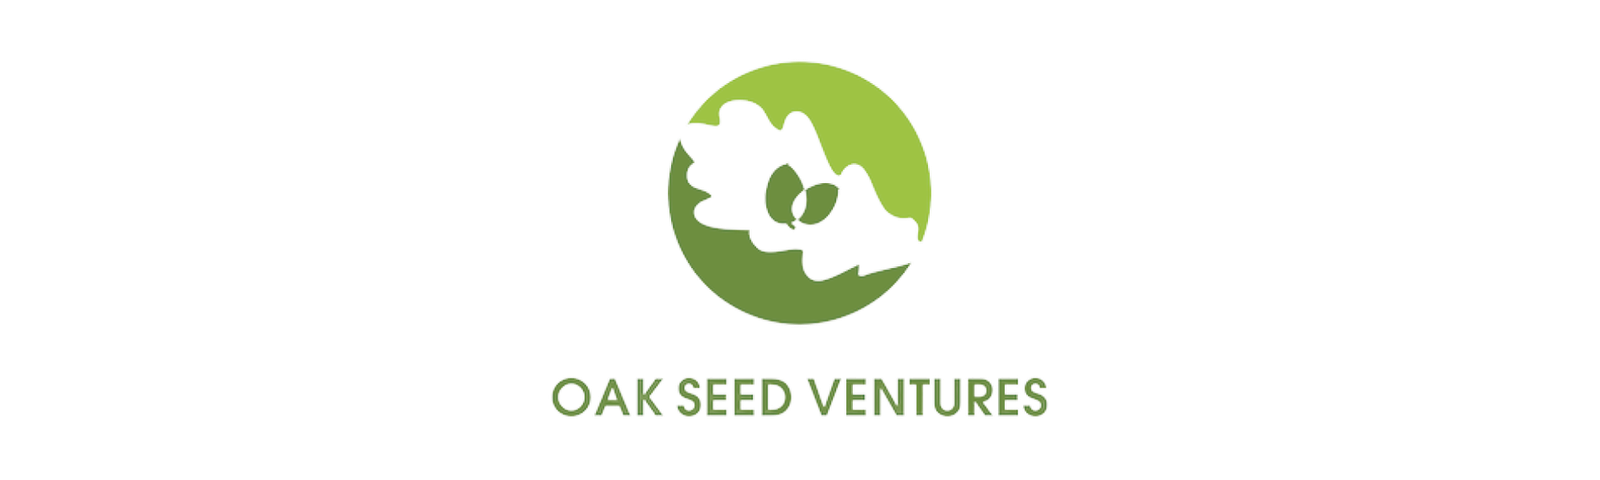 OAK Seed ventures